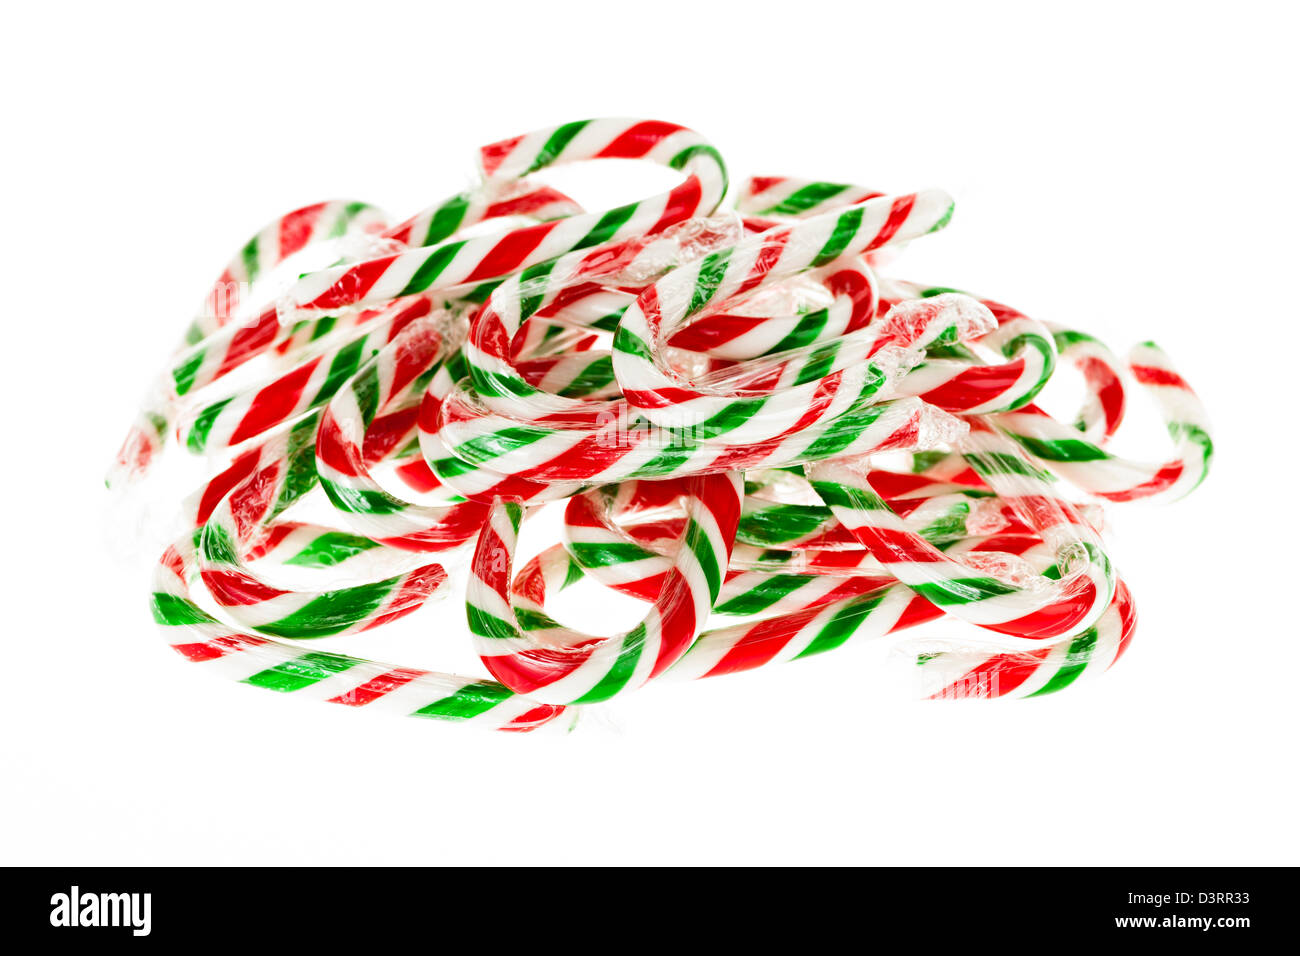 Haufen von roten und grünen Weihnachtsplätzchen Stöcke isolierten auf weißen Hintergrund Stockfoto